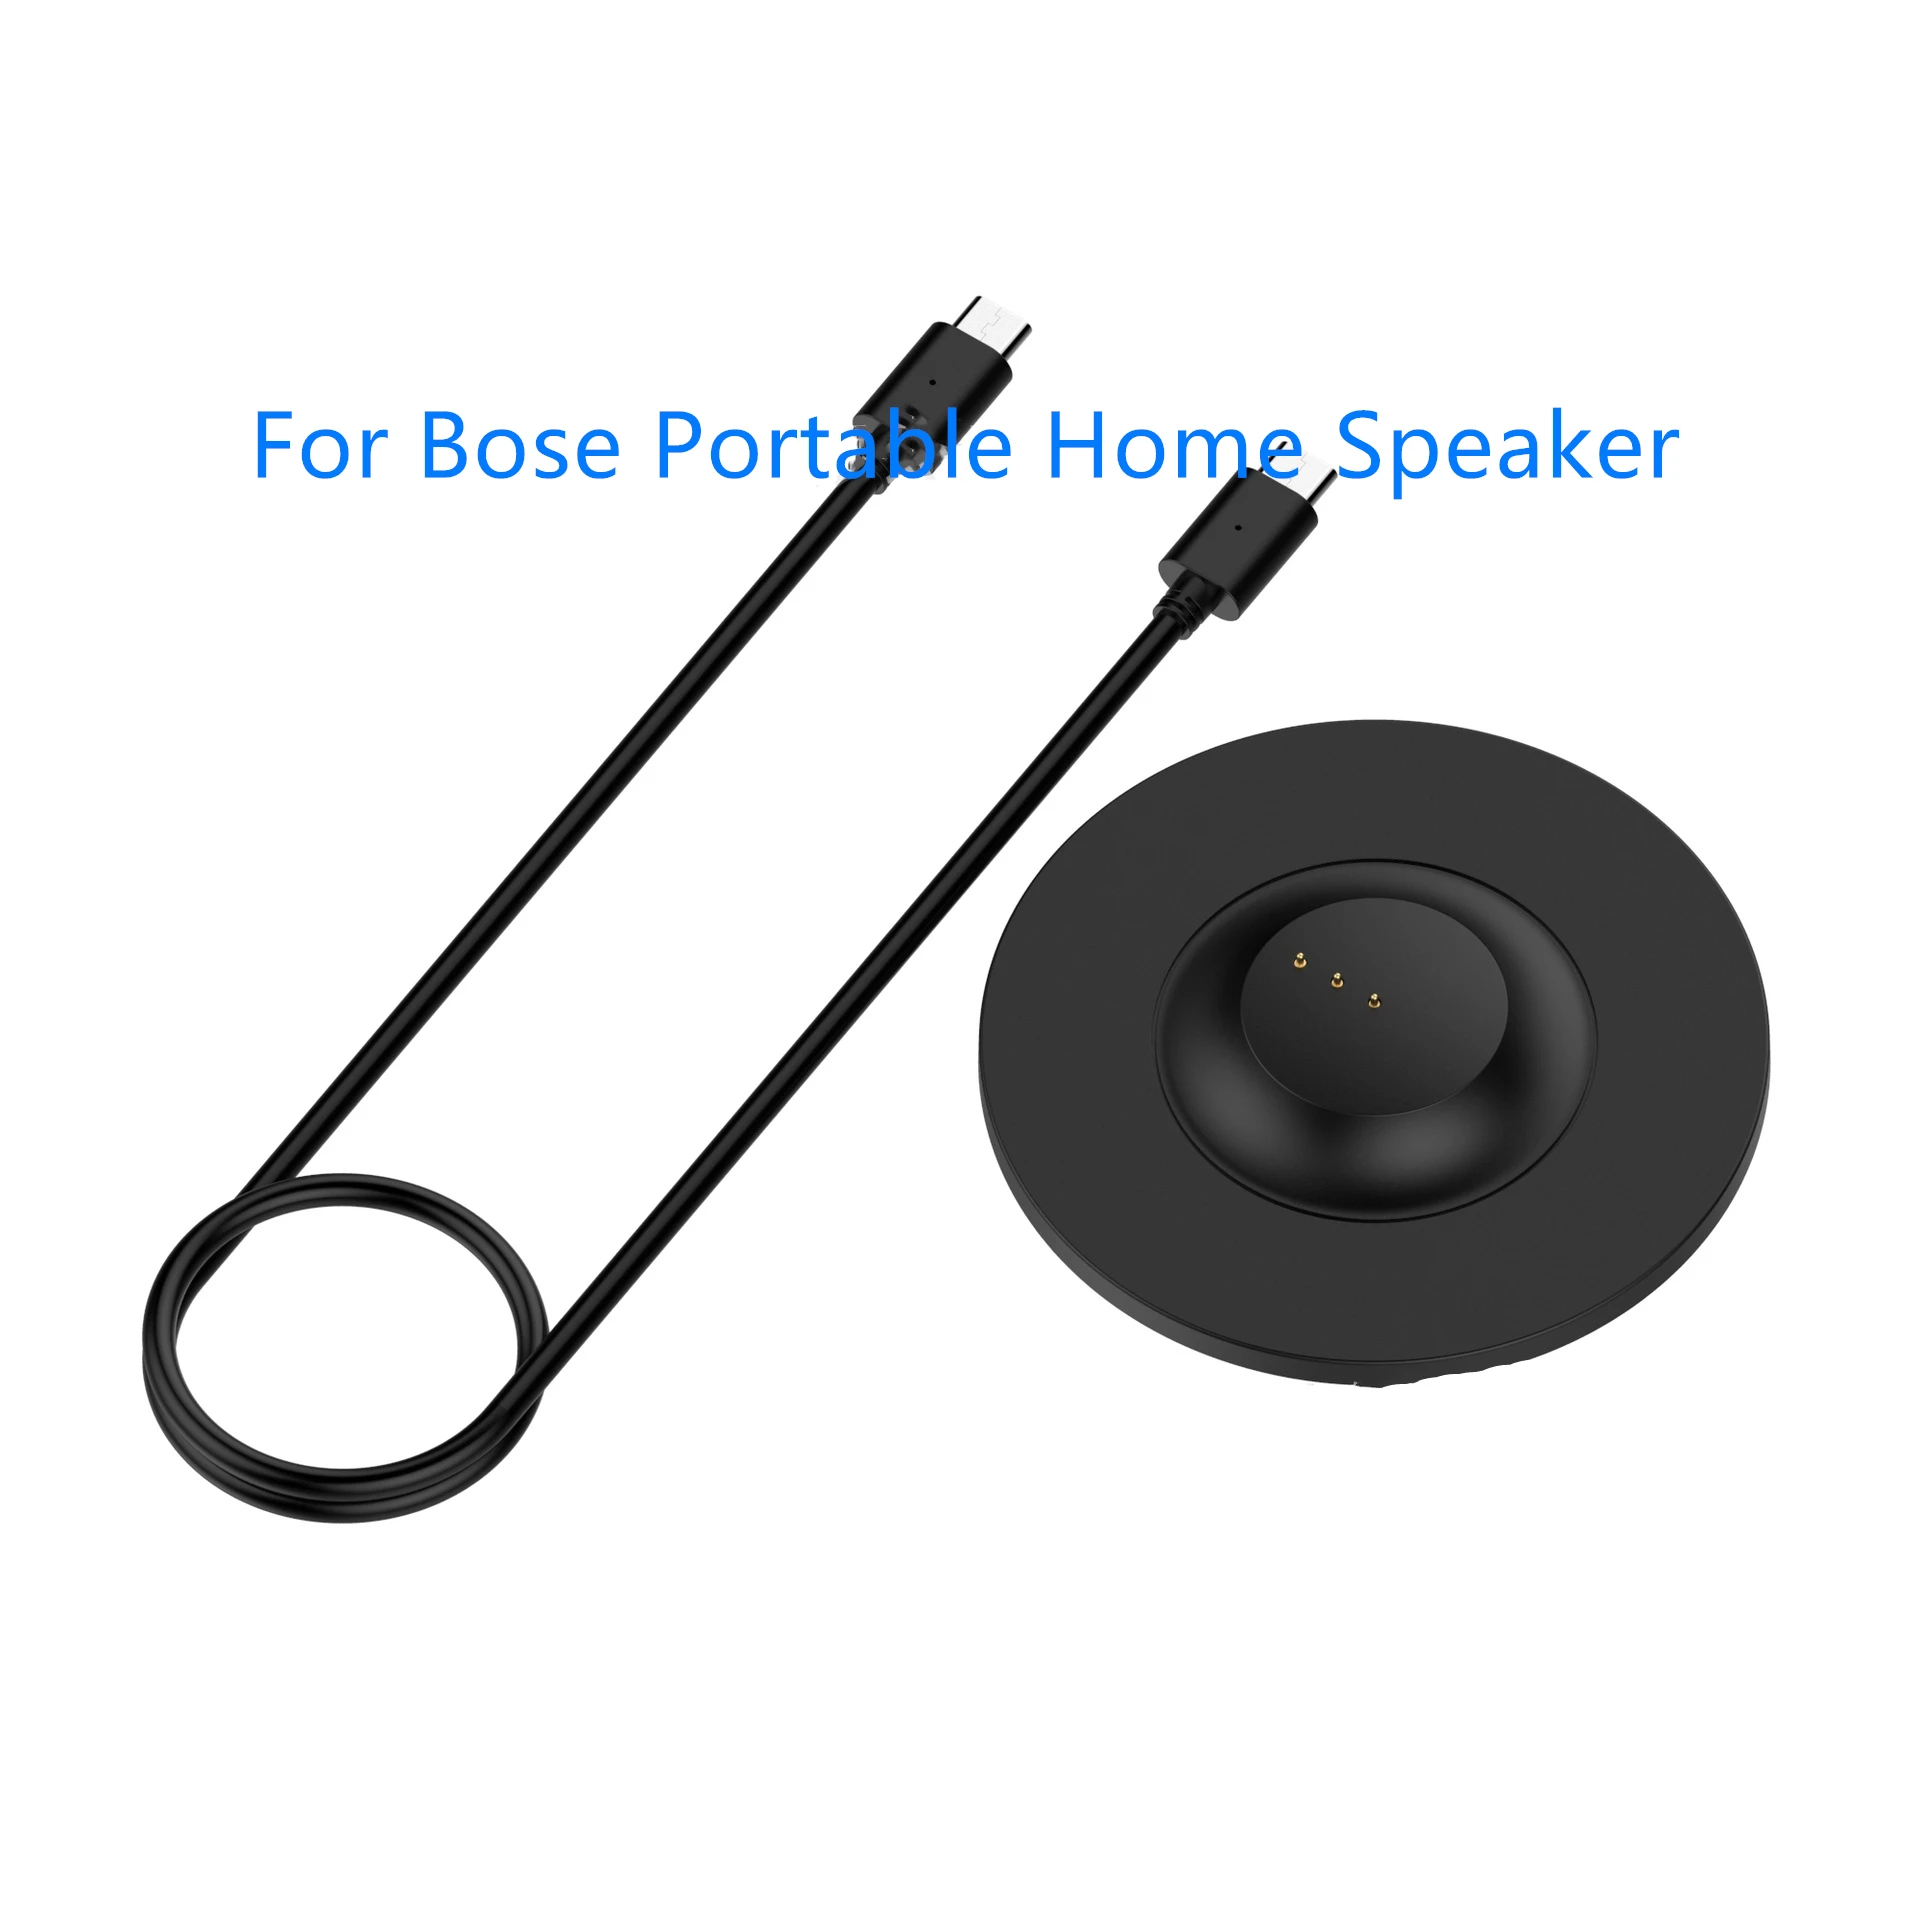 

Зарядная база подходит для портативного домашнего динамика Bose, аудиозарядная база